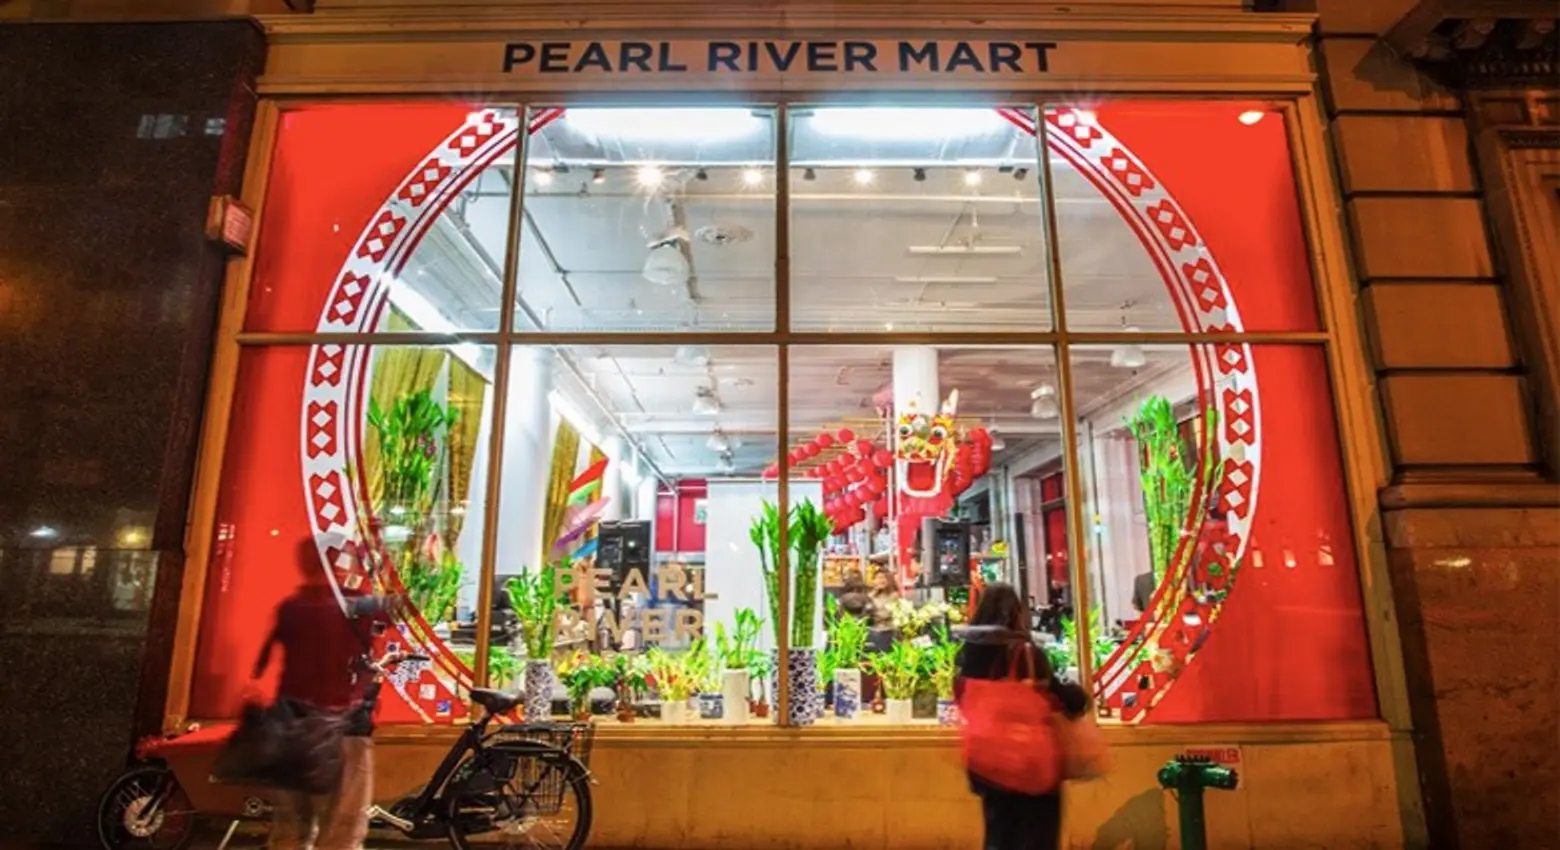 peral river mart pop-up shop